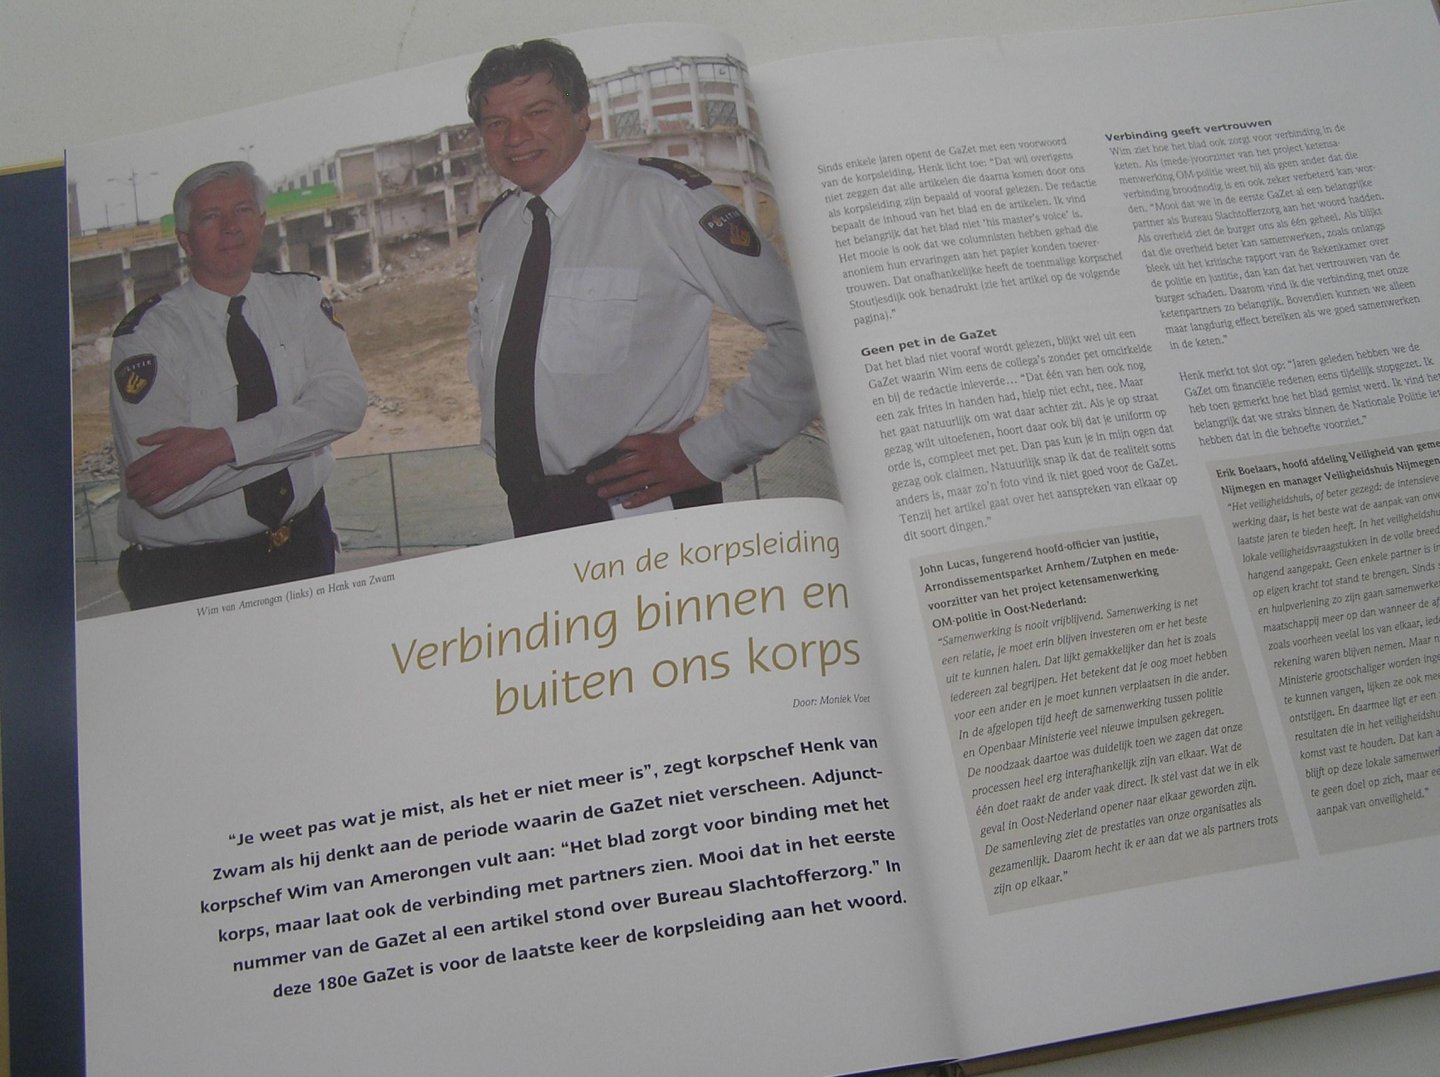 Voet Moniek ( hoofd redactie) - GAZET 1993-2011 Personeelsblad van Politie Gelderland-Zuid